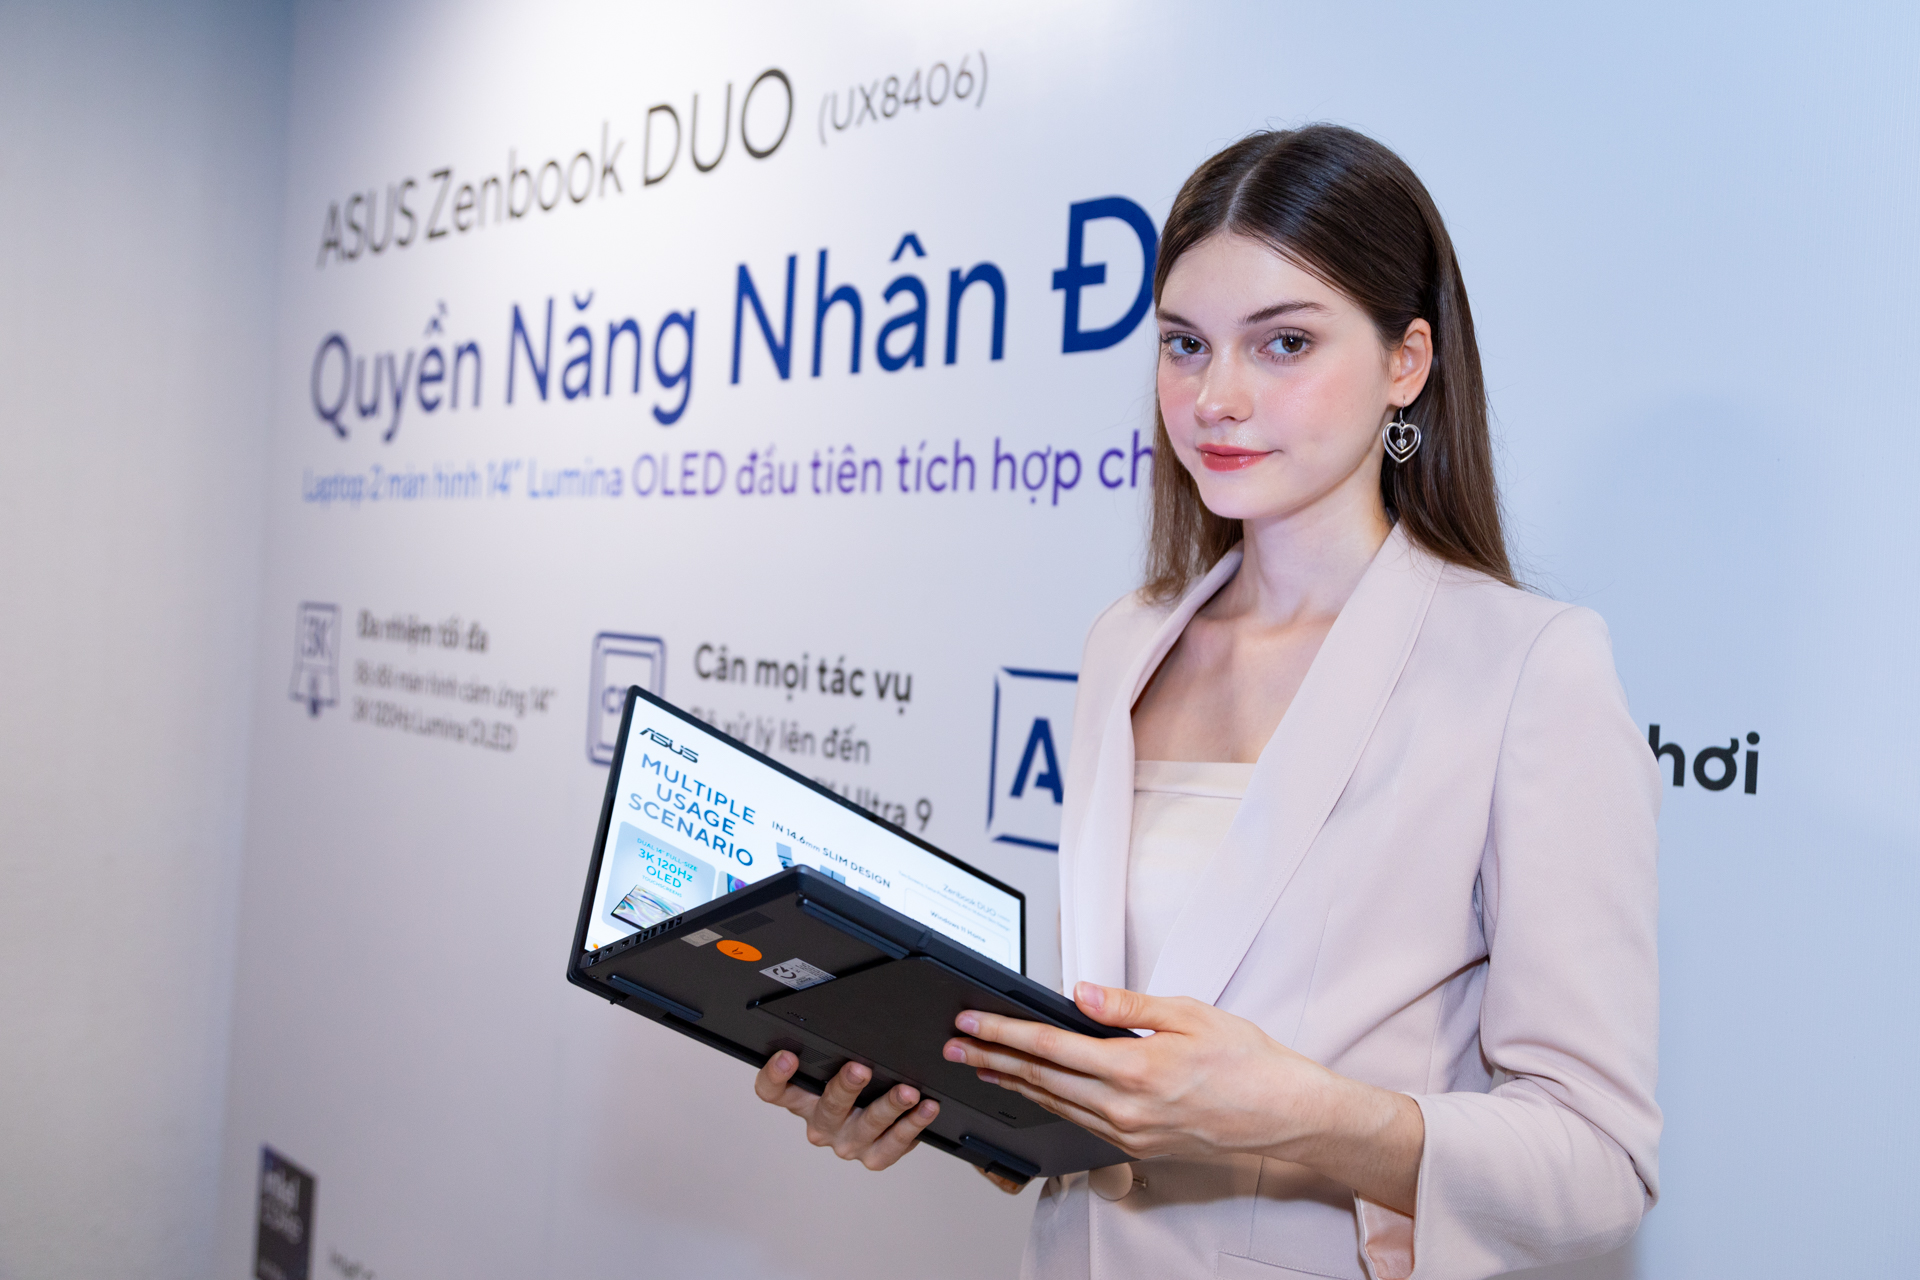 [PR] ASUS ra mắt laptop 2 màn hình Zenbook DUO 14" Lumina OLED đầu tiên tích hợp chip AI - Image 10